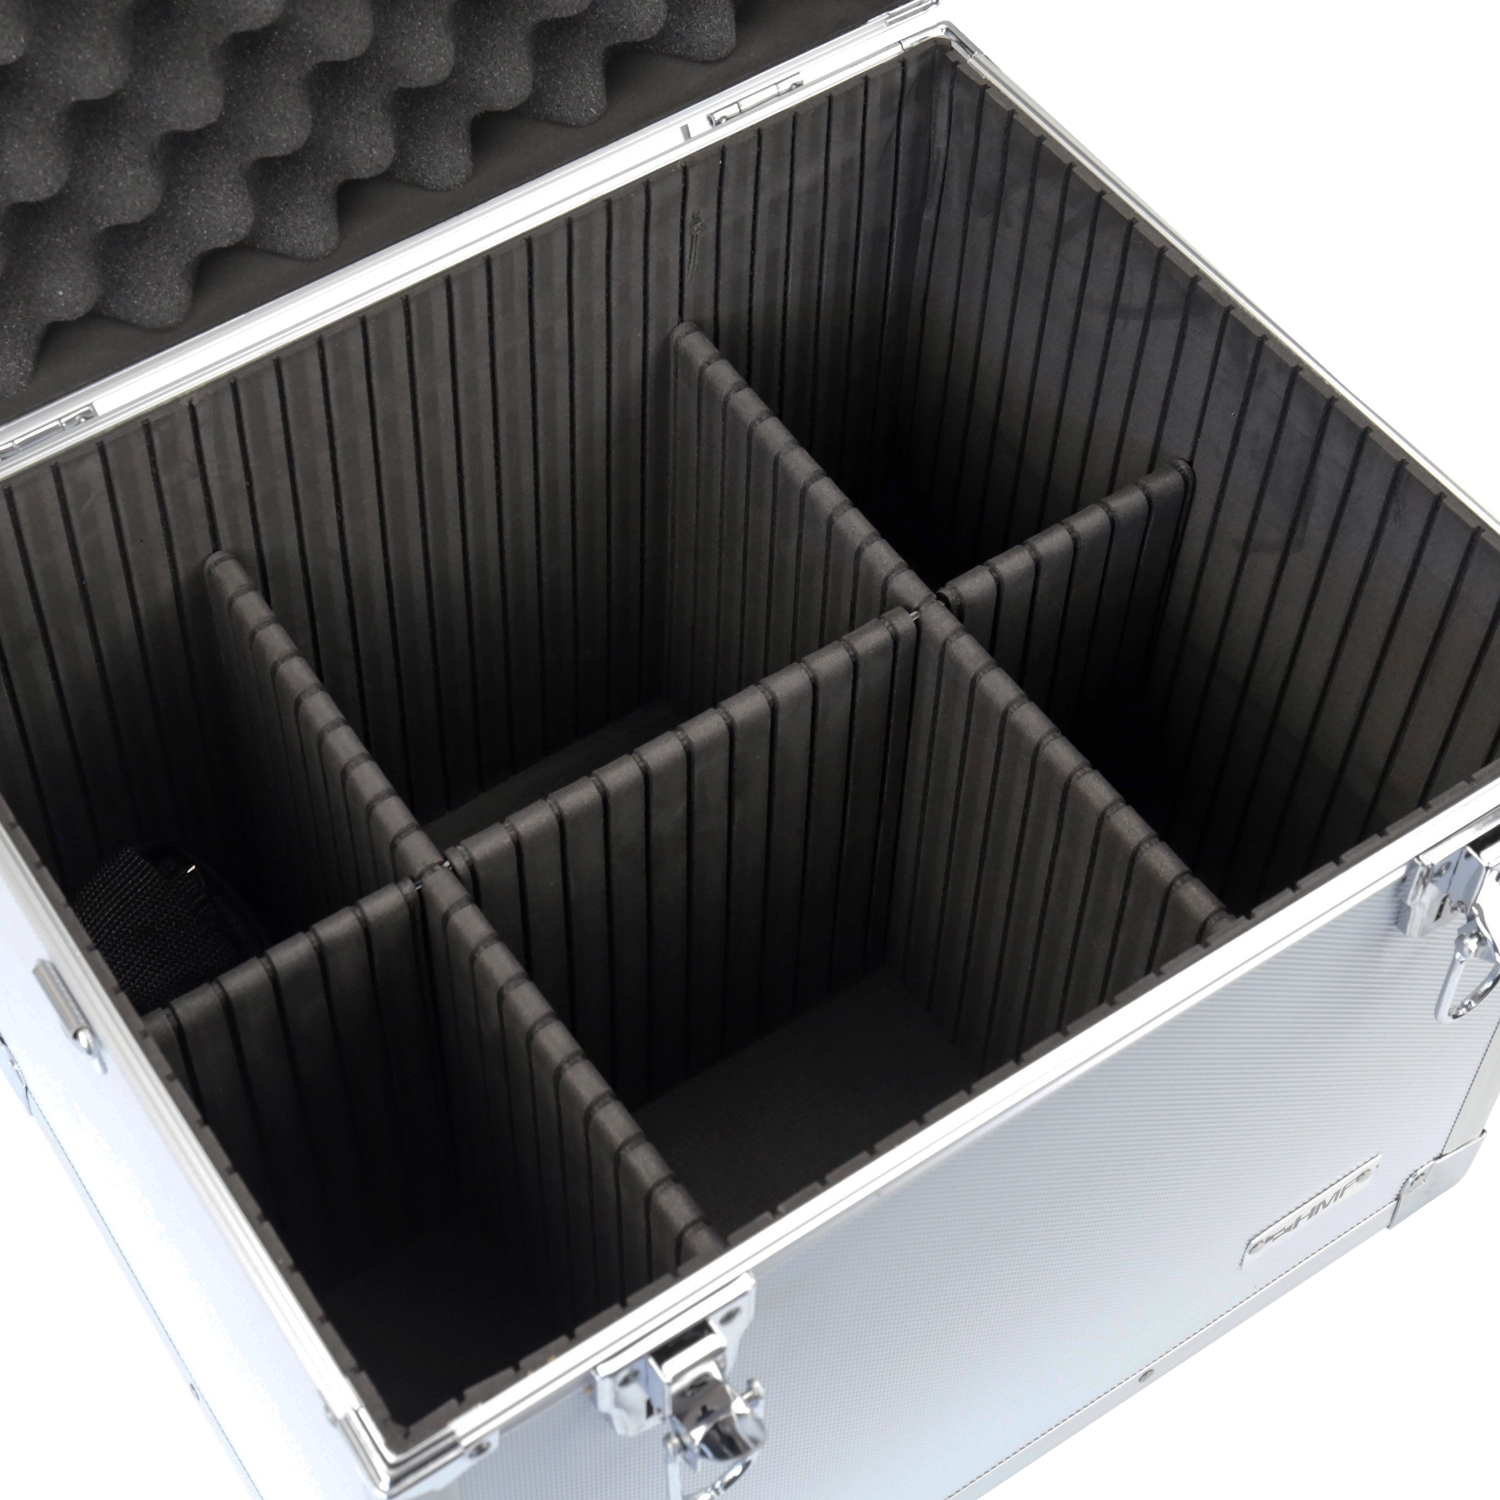 Alu Aufbewahrungsbox von HMF mit den Maßen 41 x 33 x 36 cm